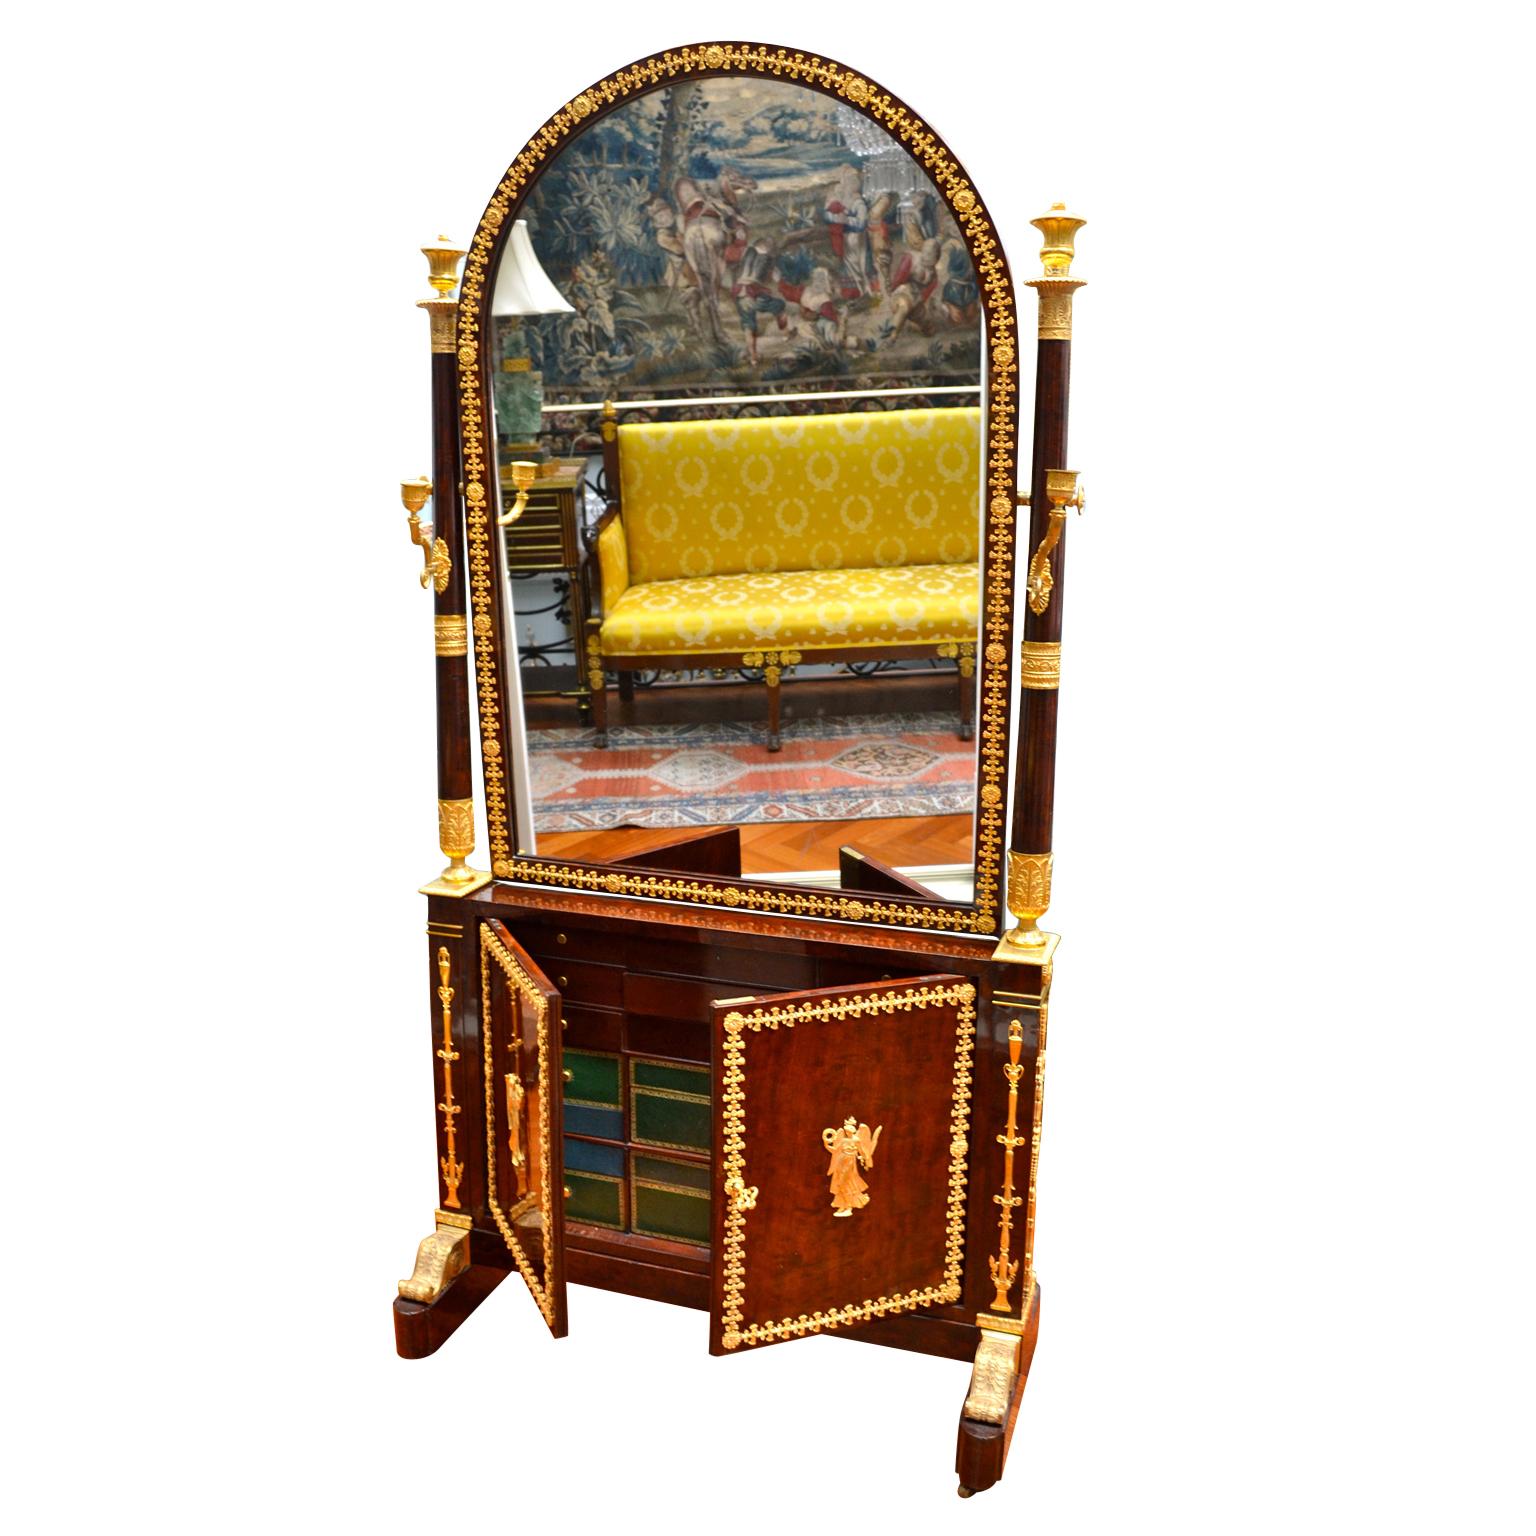 Un miroir de cheval et une armoire à bijoux en acajou, ayant appartenu à Leitizia Bonaparte, la mère de Napoléon. Le miroir semi-circulaire en placage est encadré par des colonnes surmontées de cassolettes en bronze doré et de chandeliers à bras